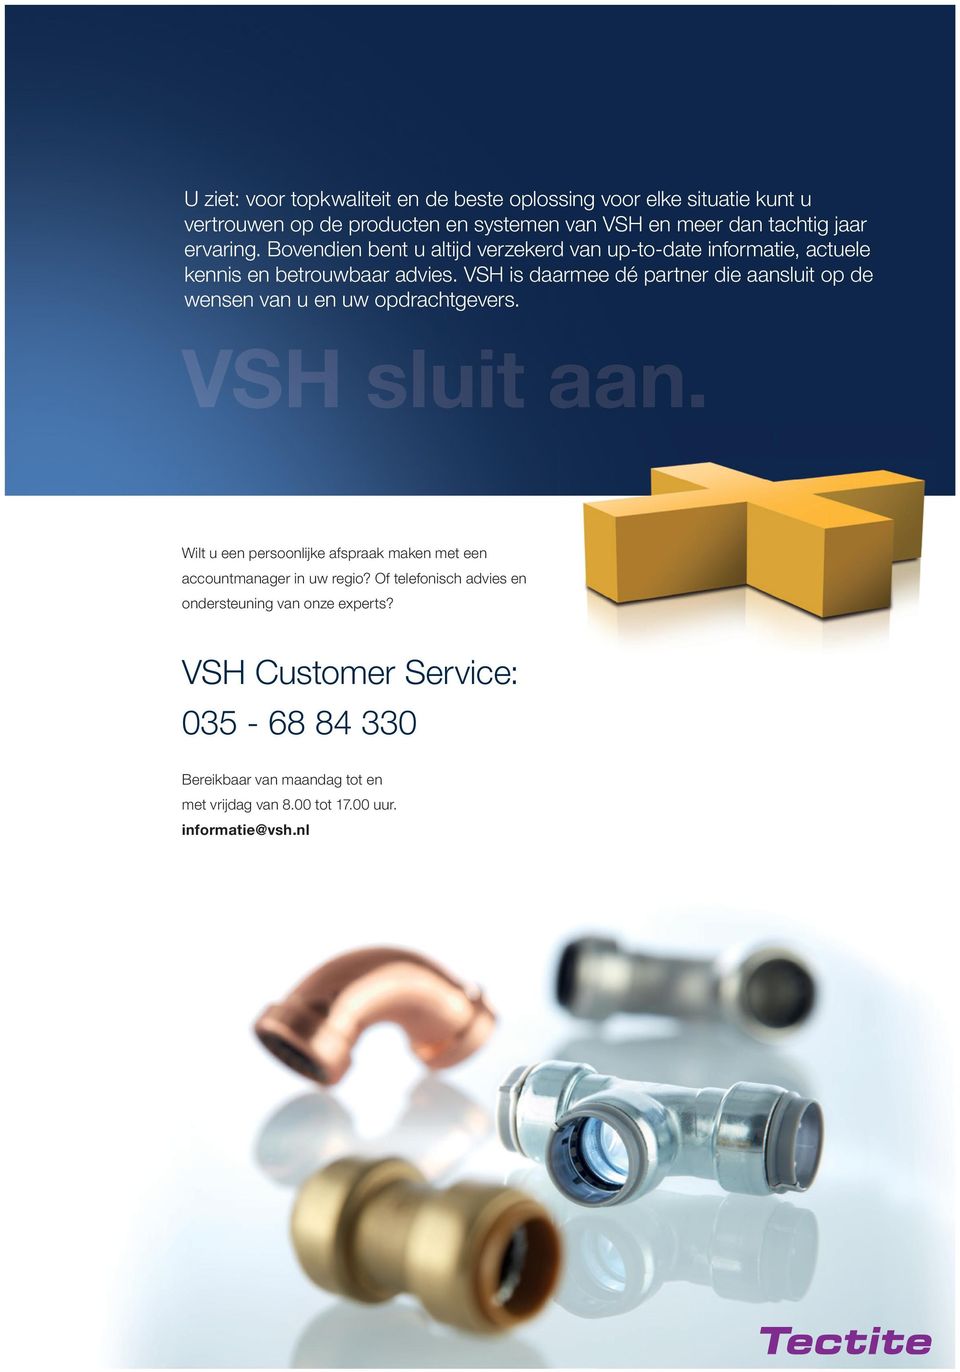 VSH is daarmee dé partner die aansluit op de wensen van u en uw opdrachtgevers. VSH sluit aan.